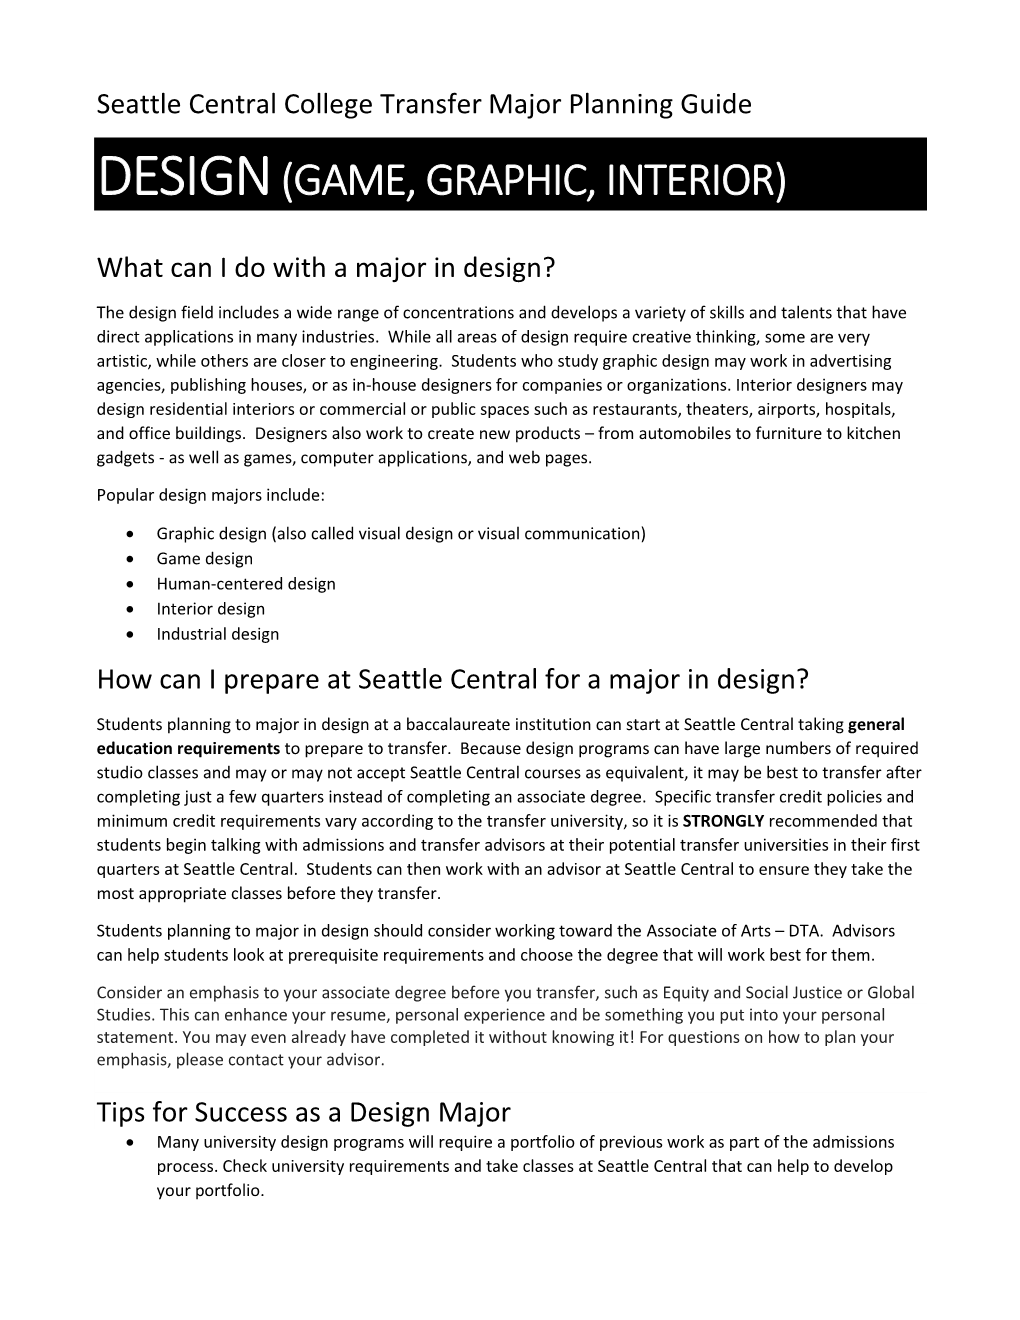 Design(Game, Graphic, Interior)